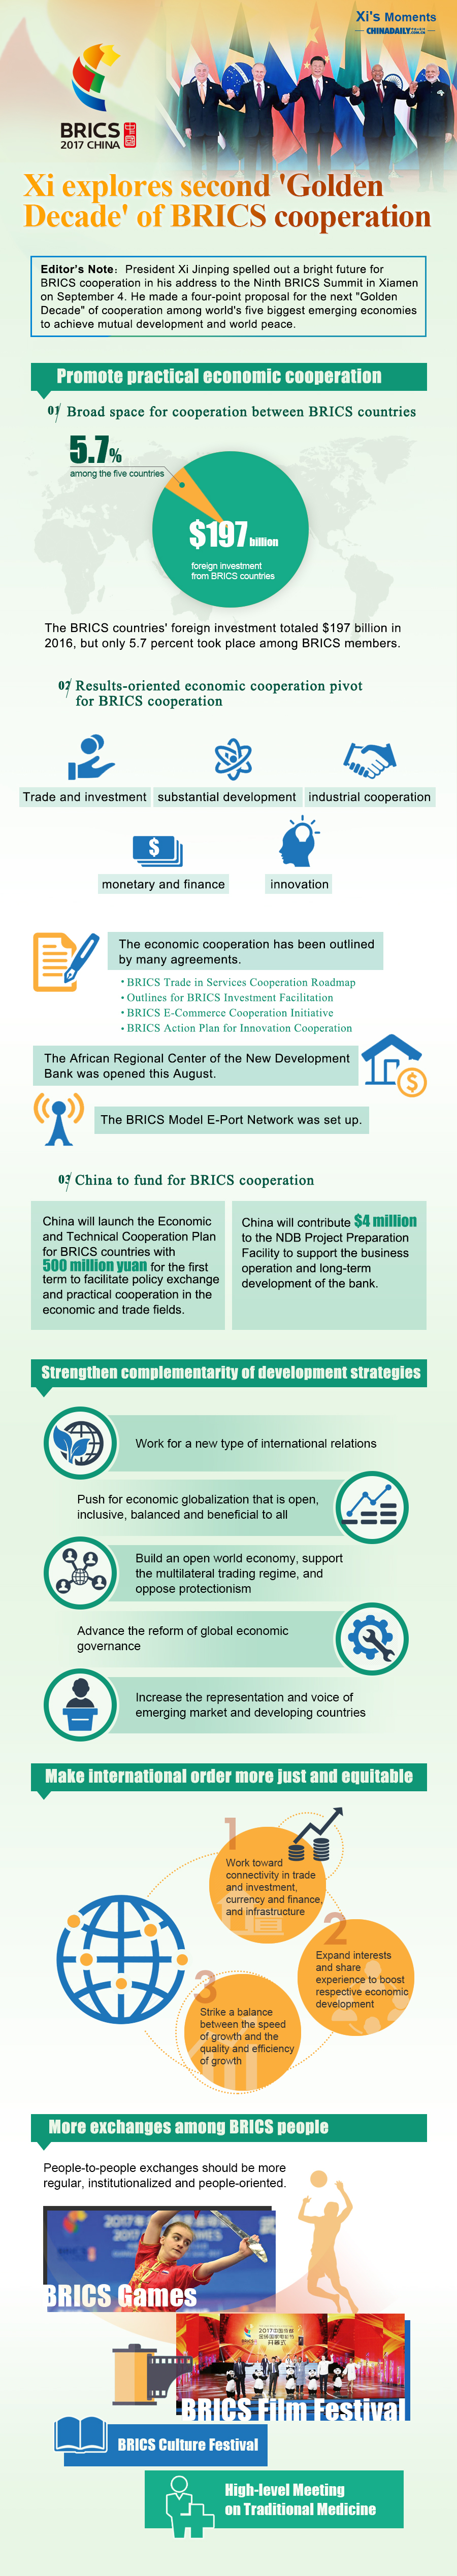 Xi explores second 'Golden Decade' of BRICS cooperation